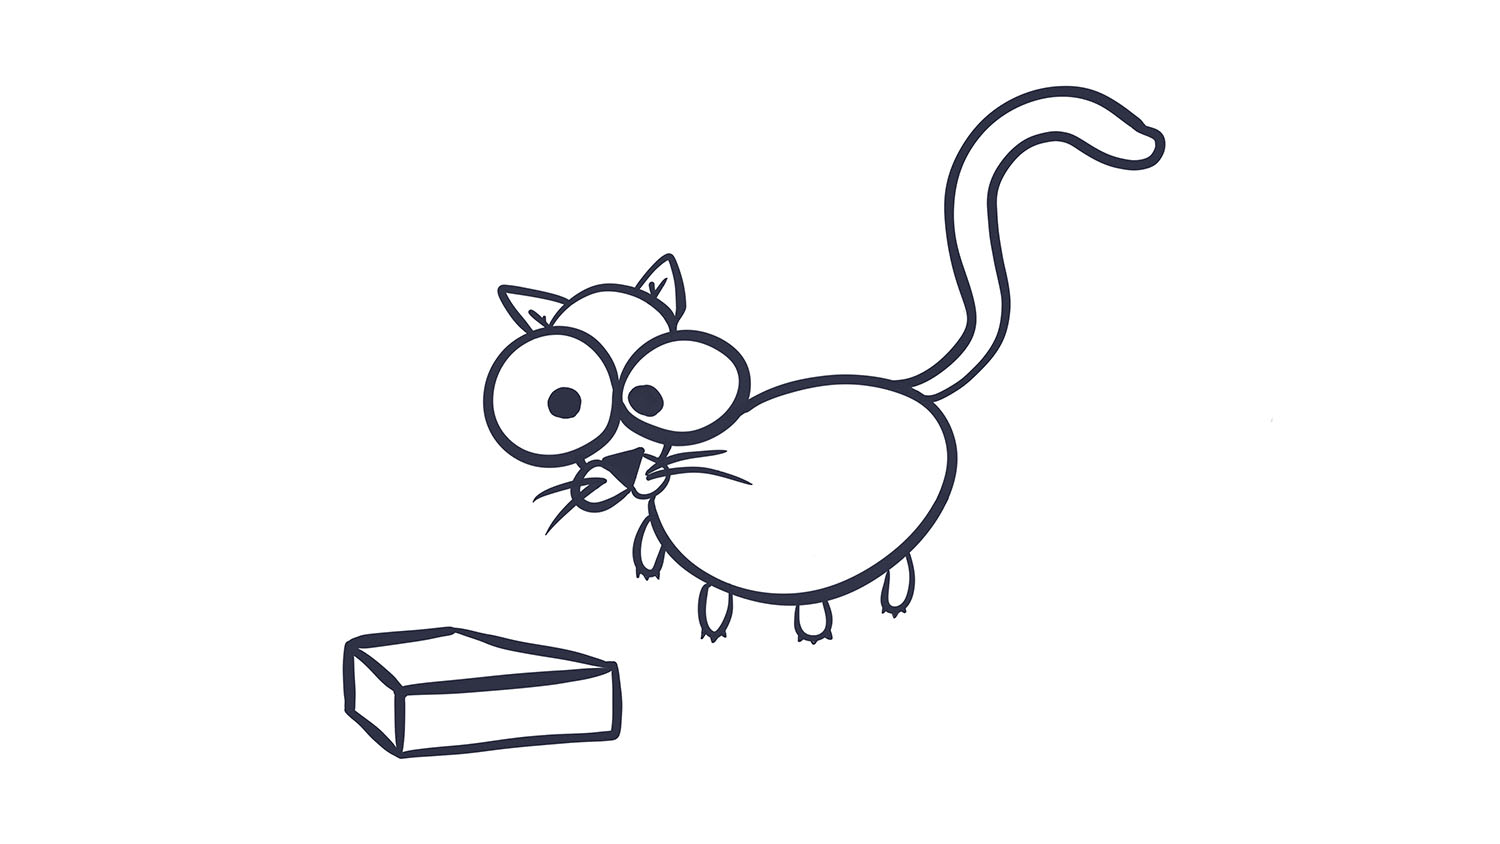 3. Gato / Cat. 103dibujos